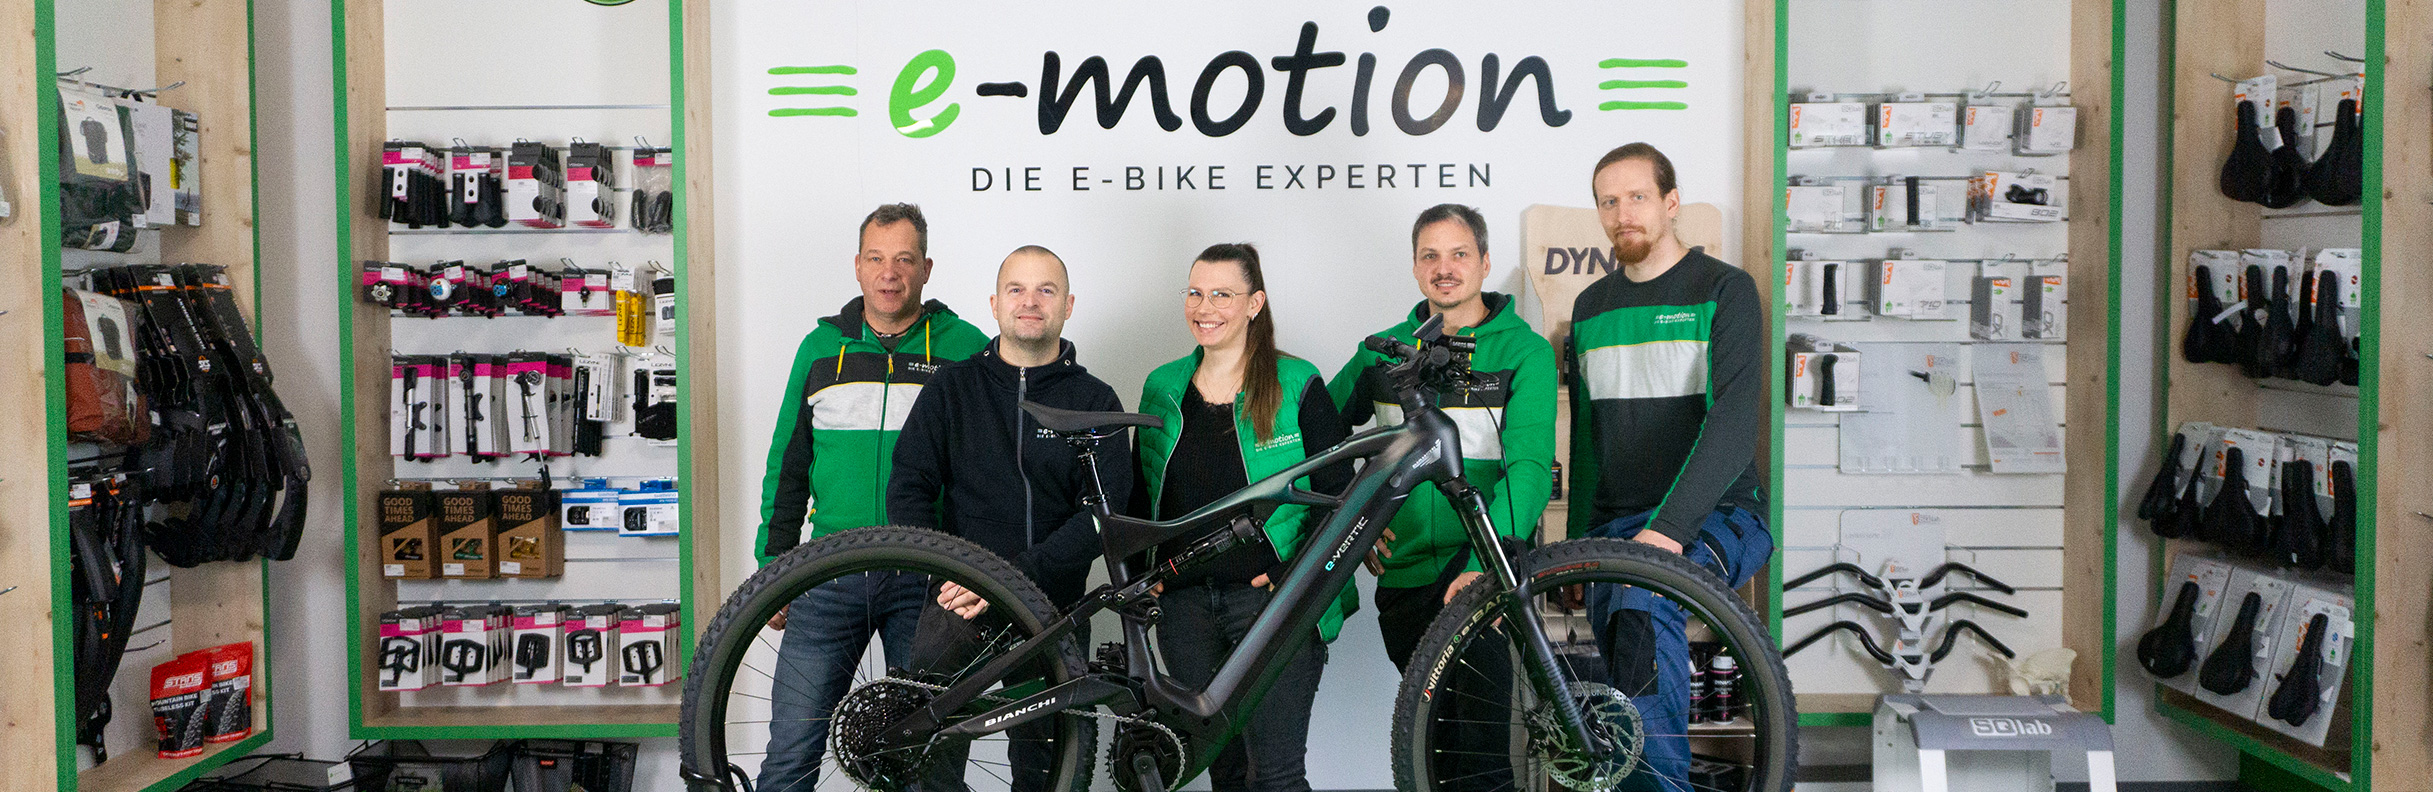 e-motion e-Bike Welt Dillenburg